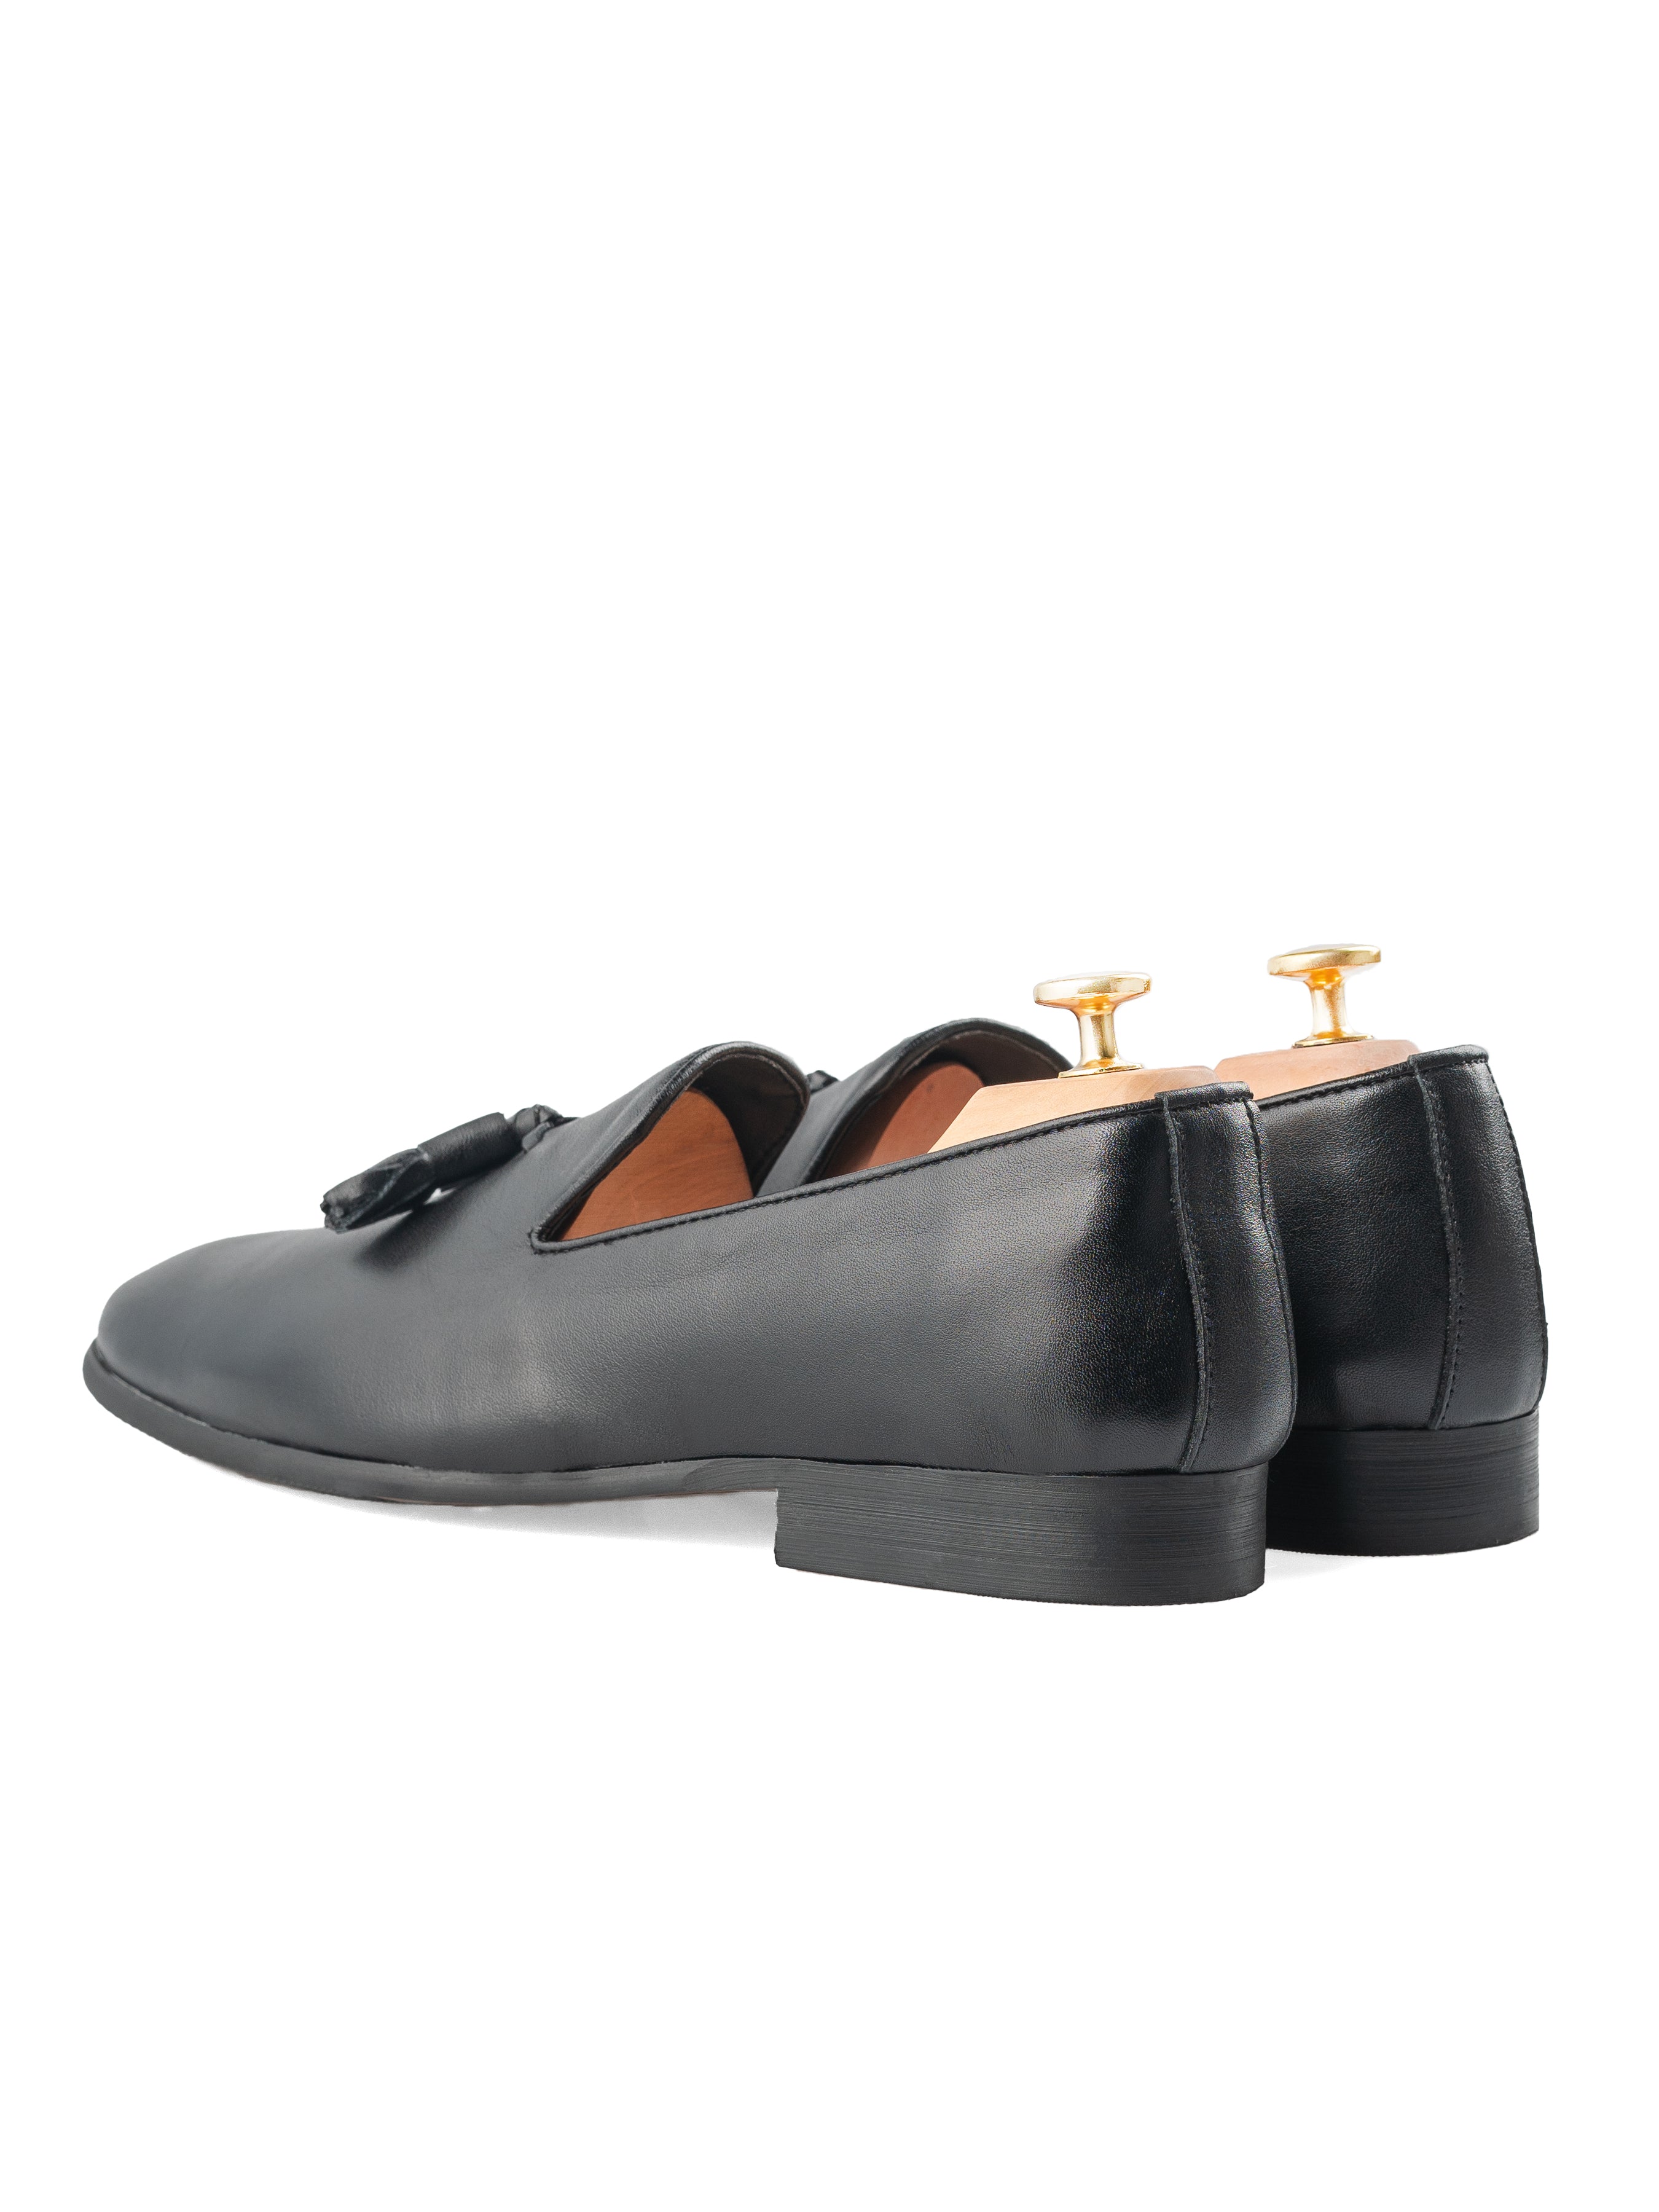 Loafer Slipper - Solid Black Leather